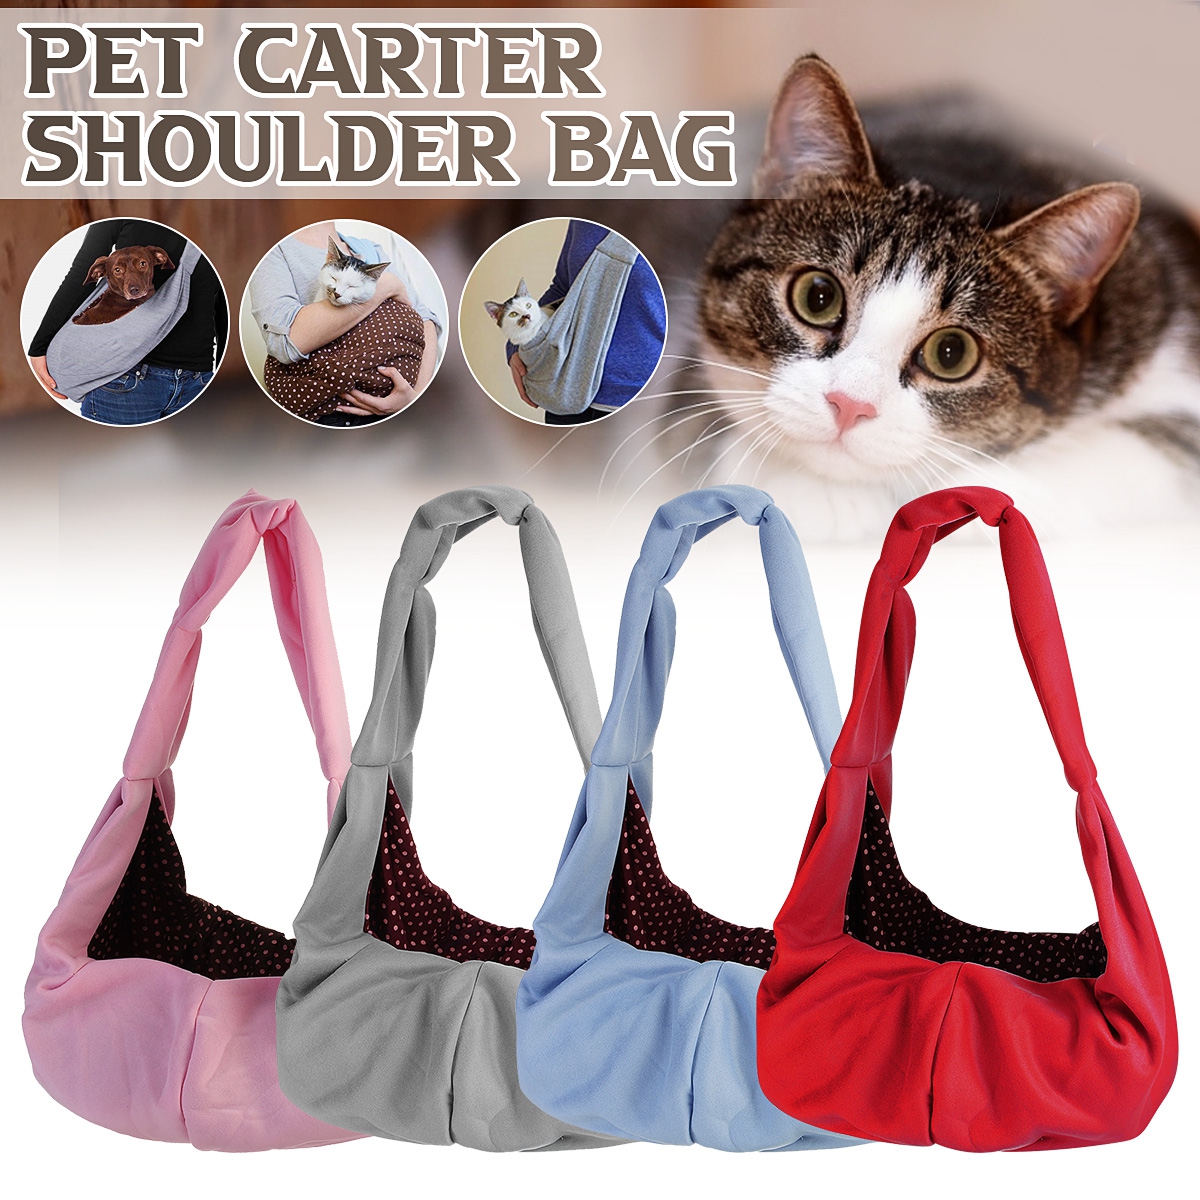 Pet-Carrier-Outdoor-Travel-Dog-Shoulder-Bag-Sling-Backpack-Cat-Puppy-Handbag-1865628-1